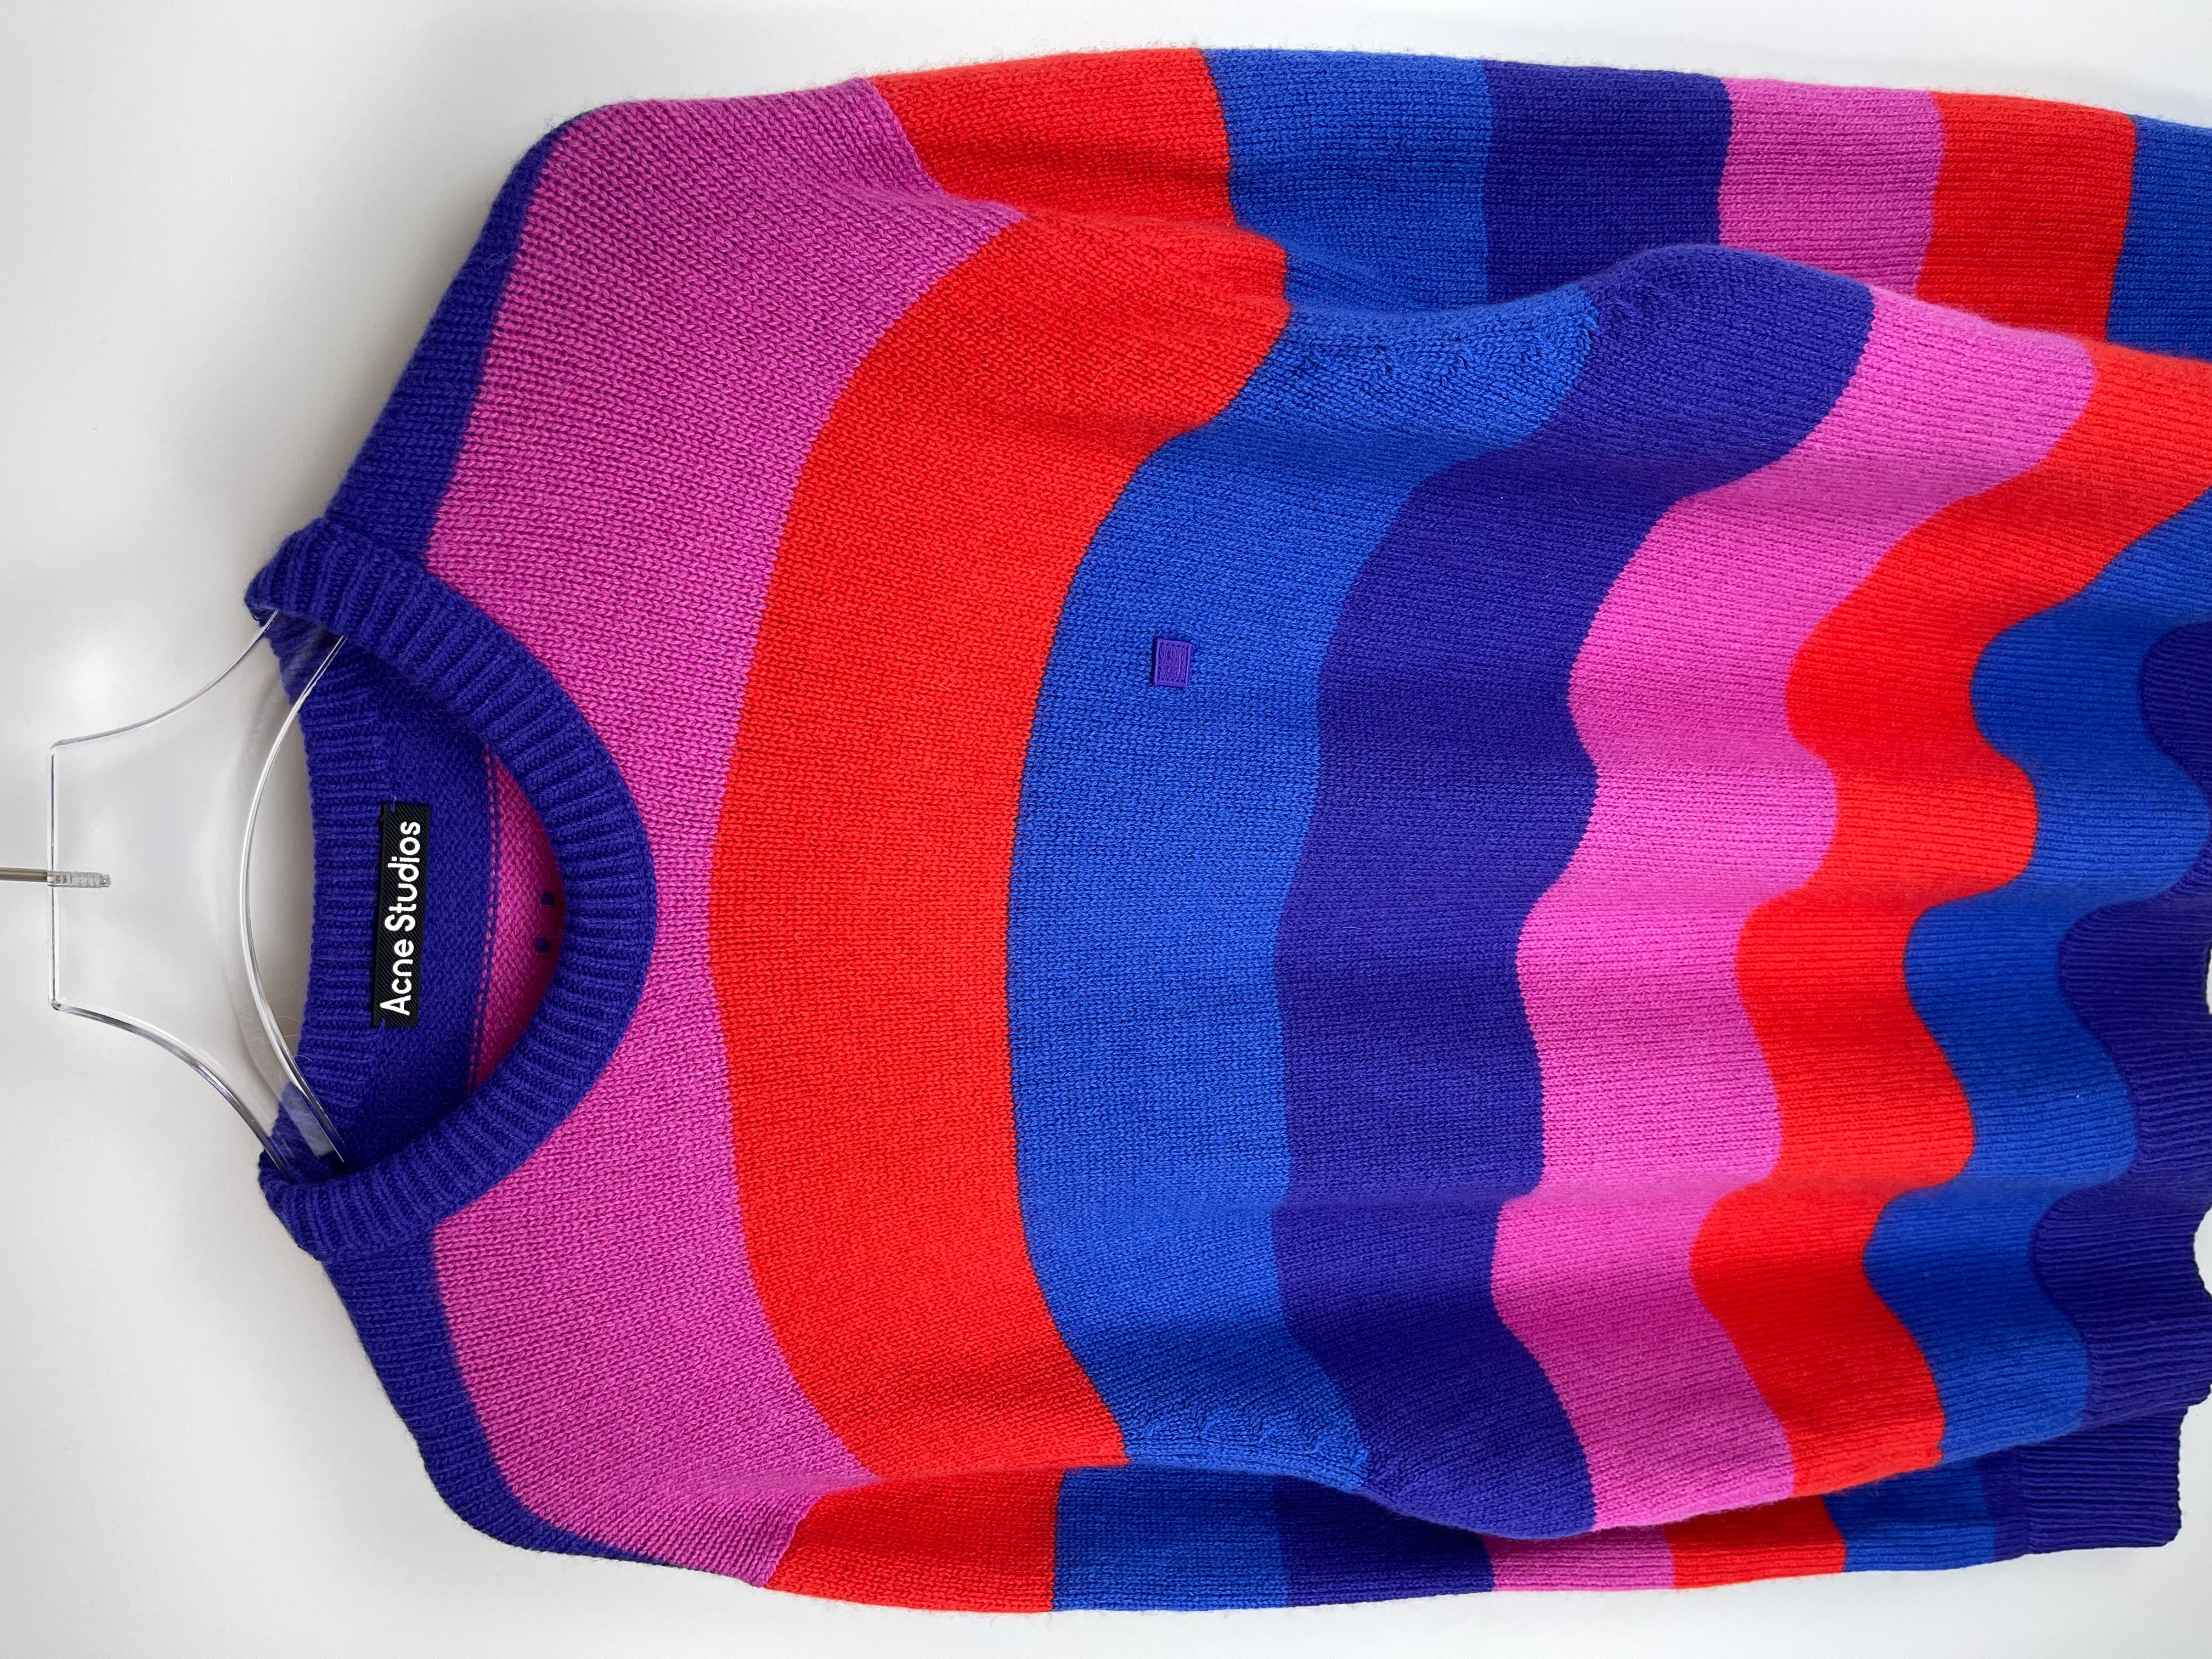 Acne Studios Multicolor Striped Sweater For Sale 1